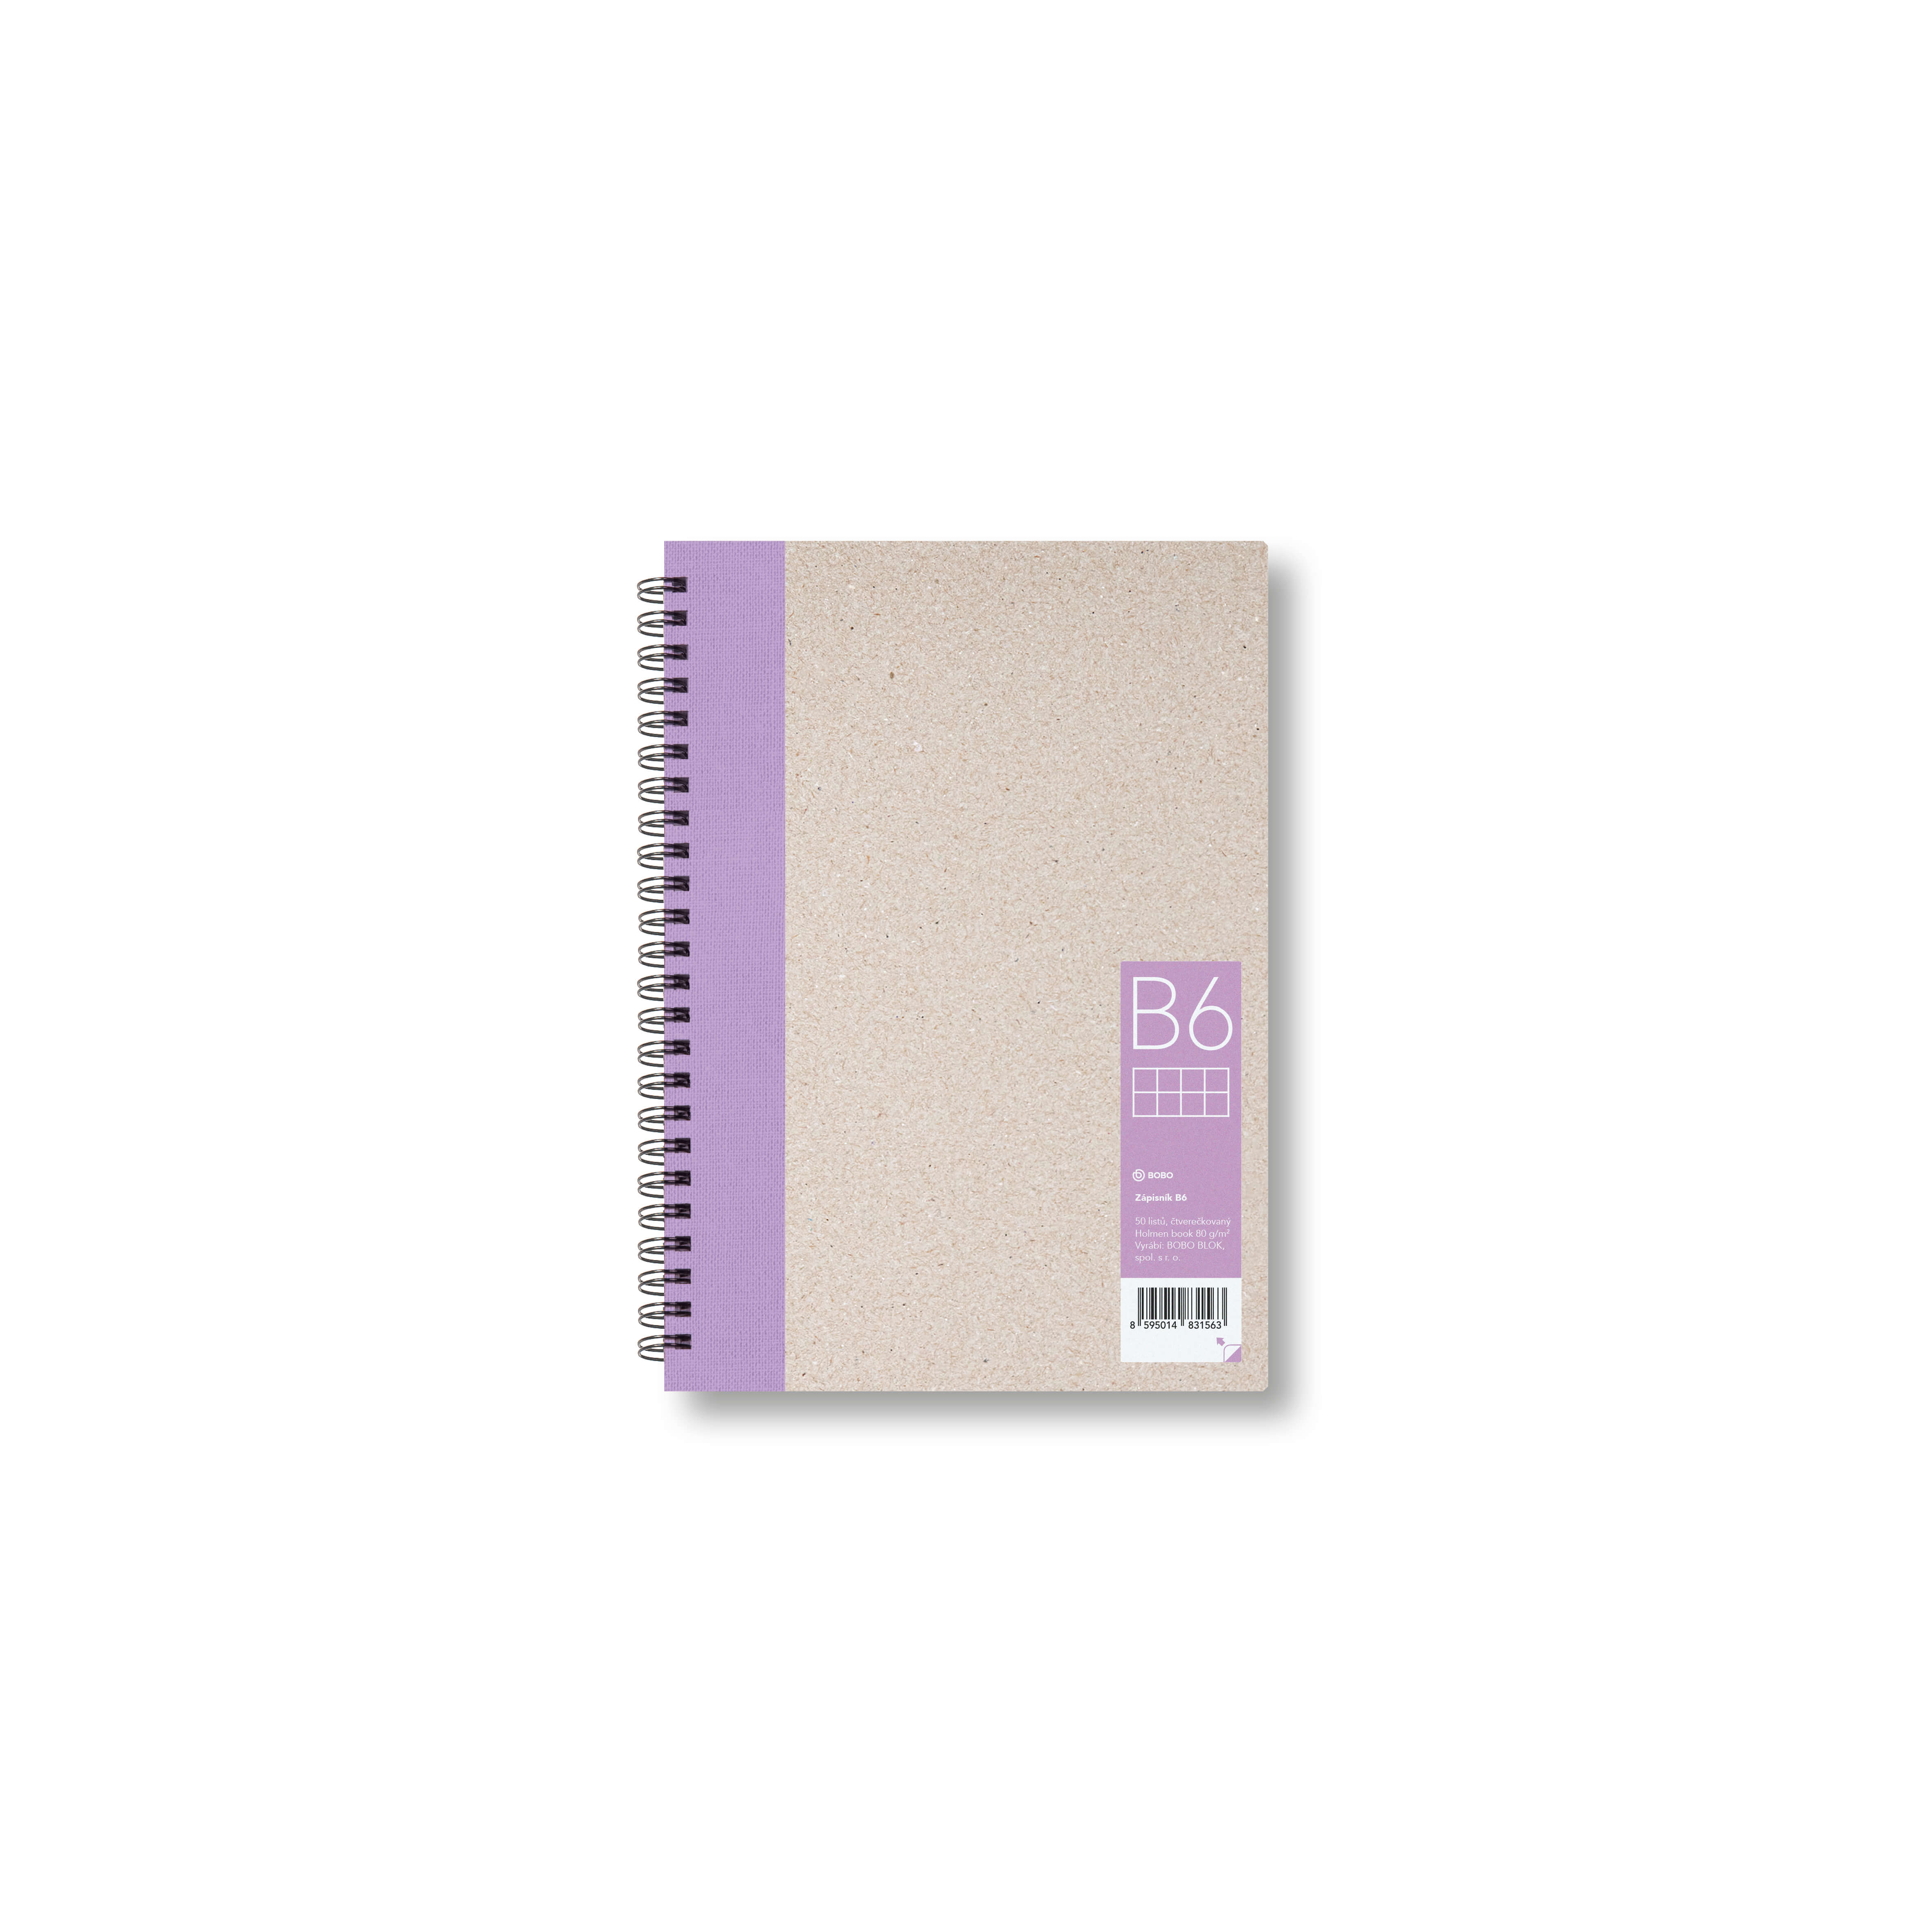 Zápisník Bobo B6, čtverečkovaný, fialový